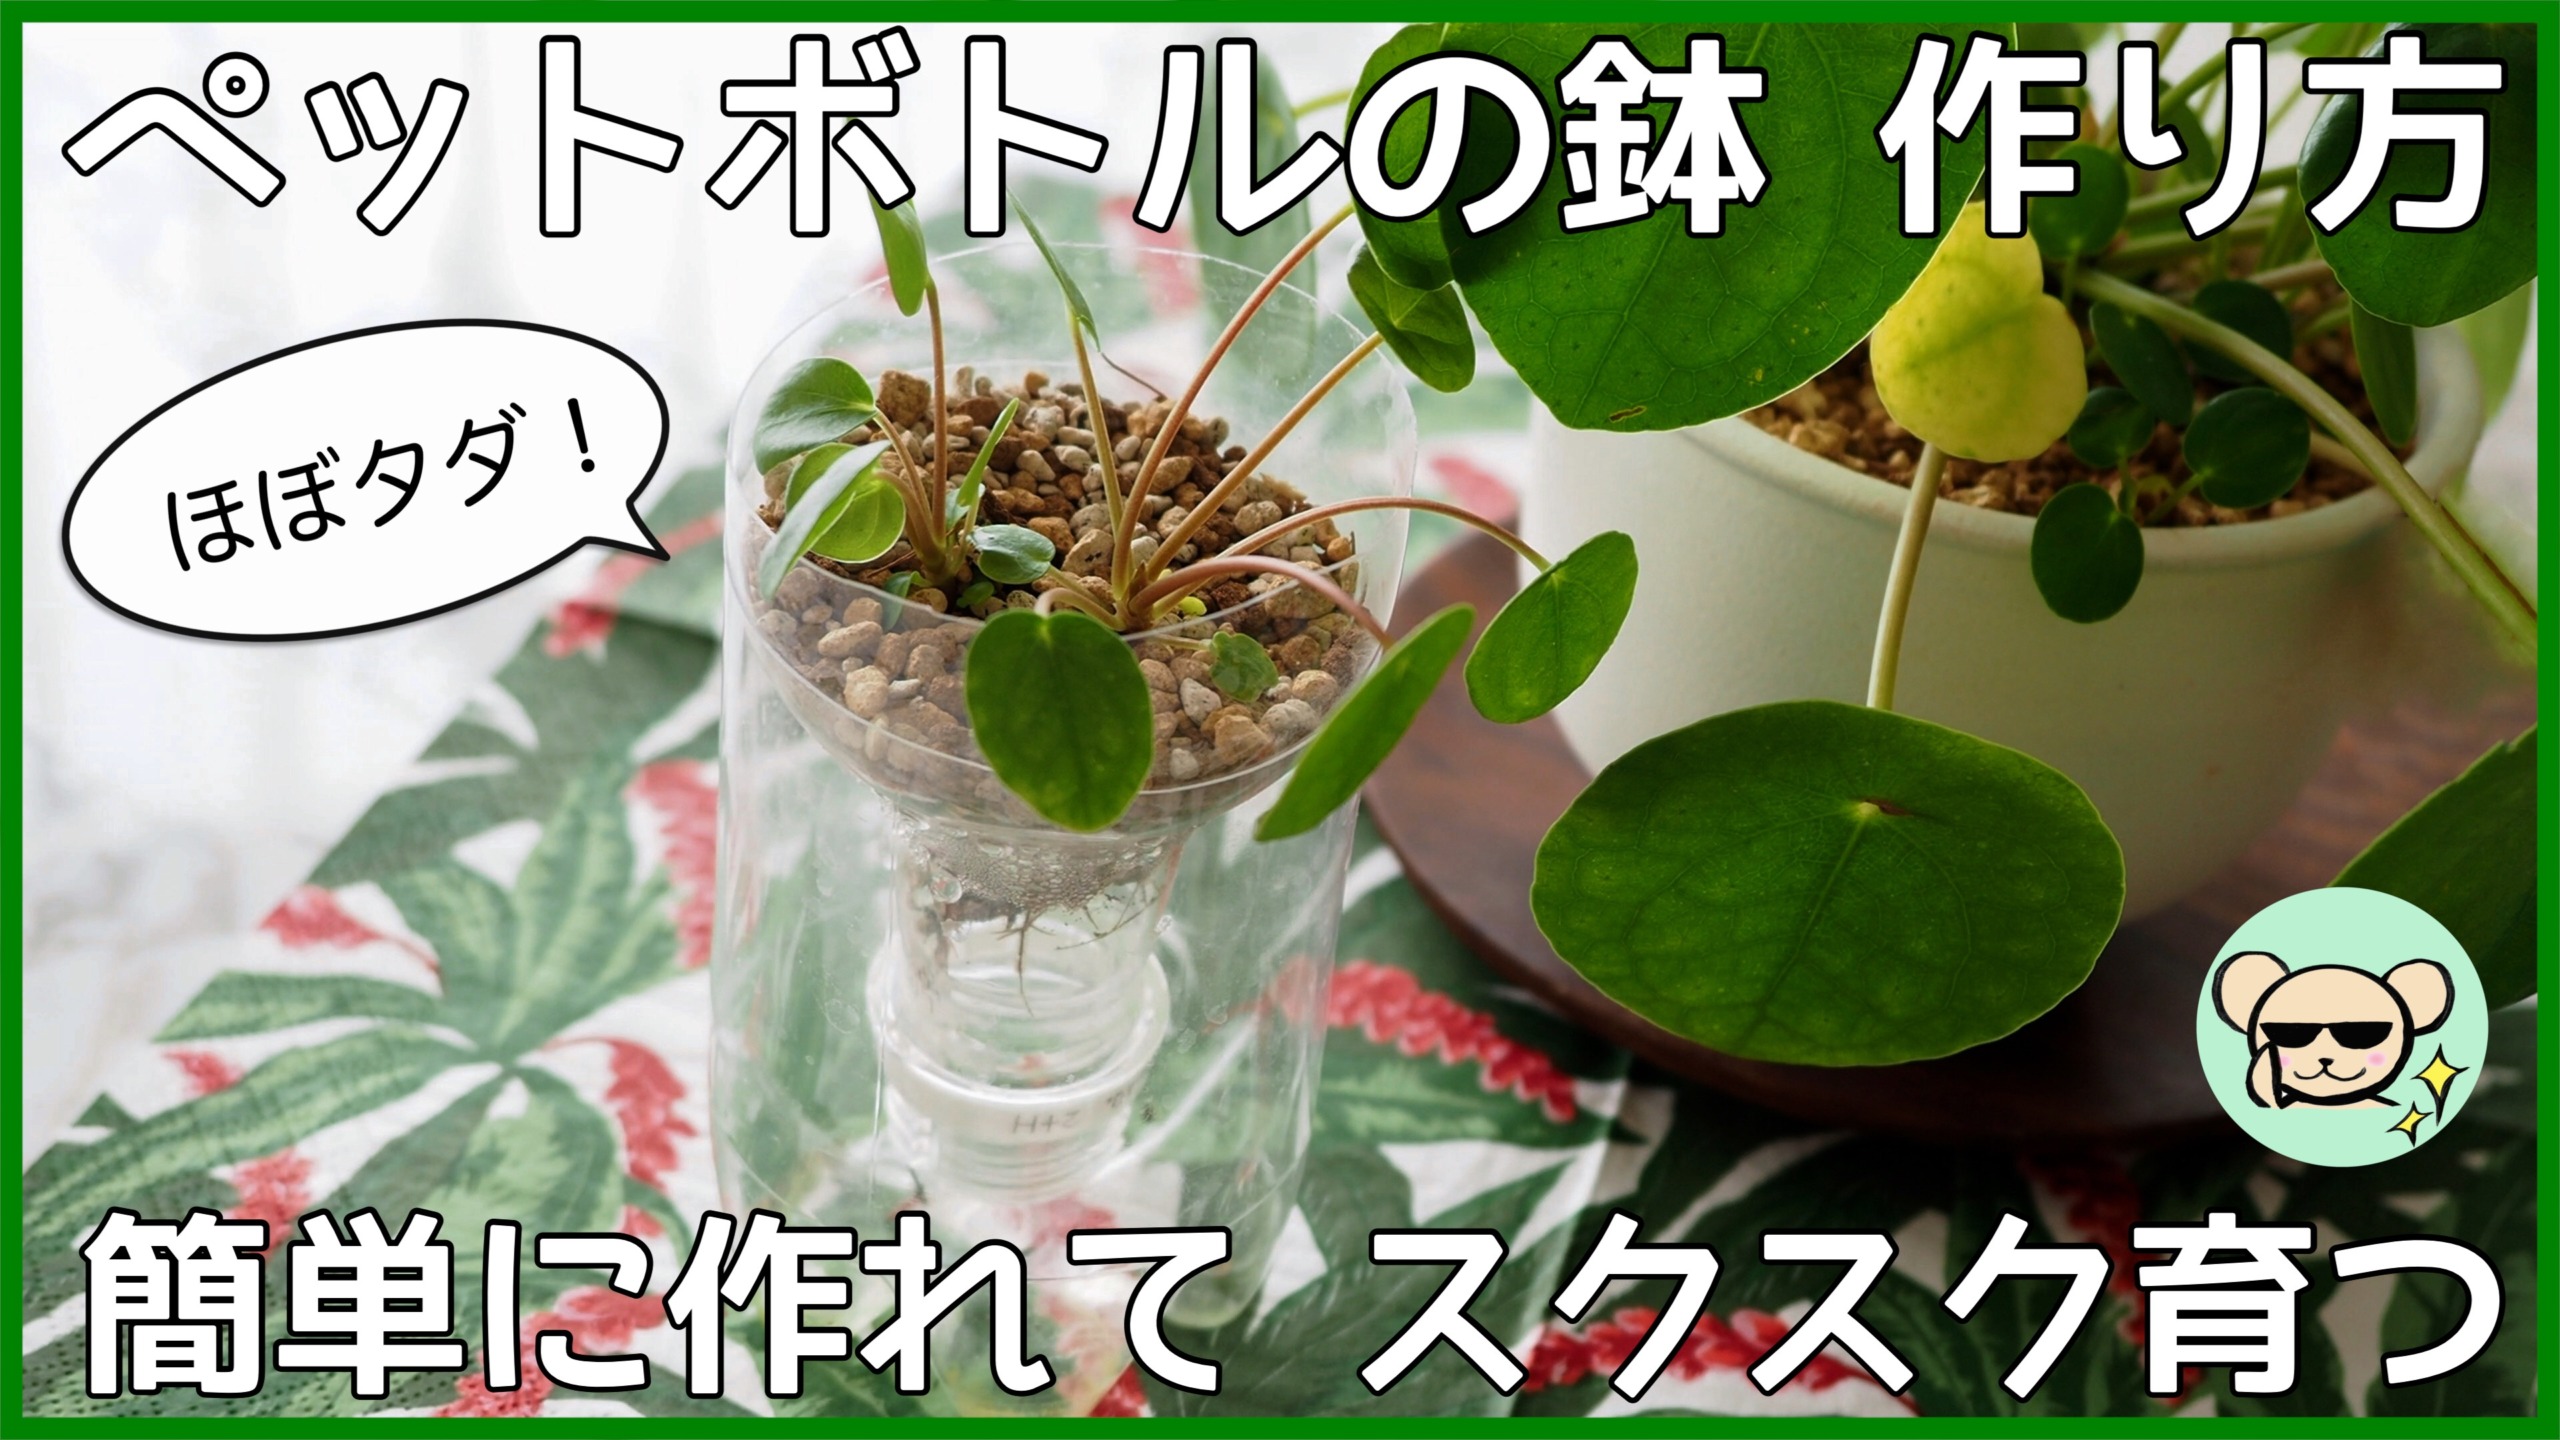 ペットボトル鉢のススメ 簡単に作れて よく育つ 作り方を解説 植物属インテリア科